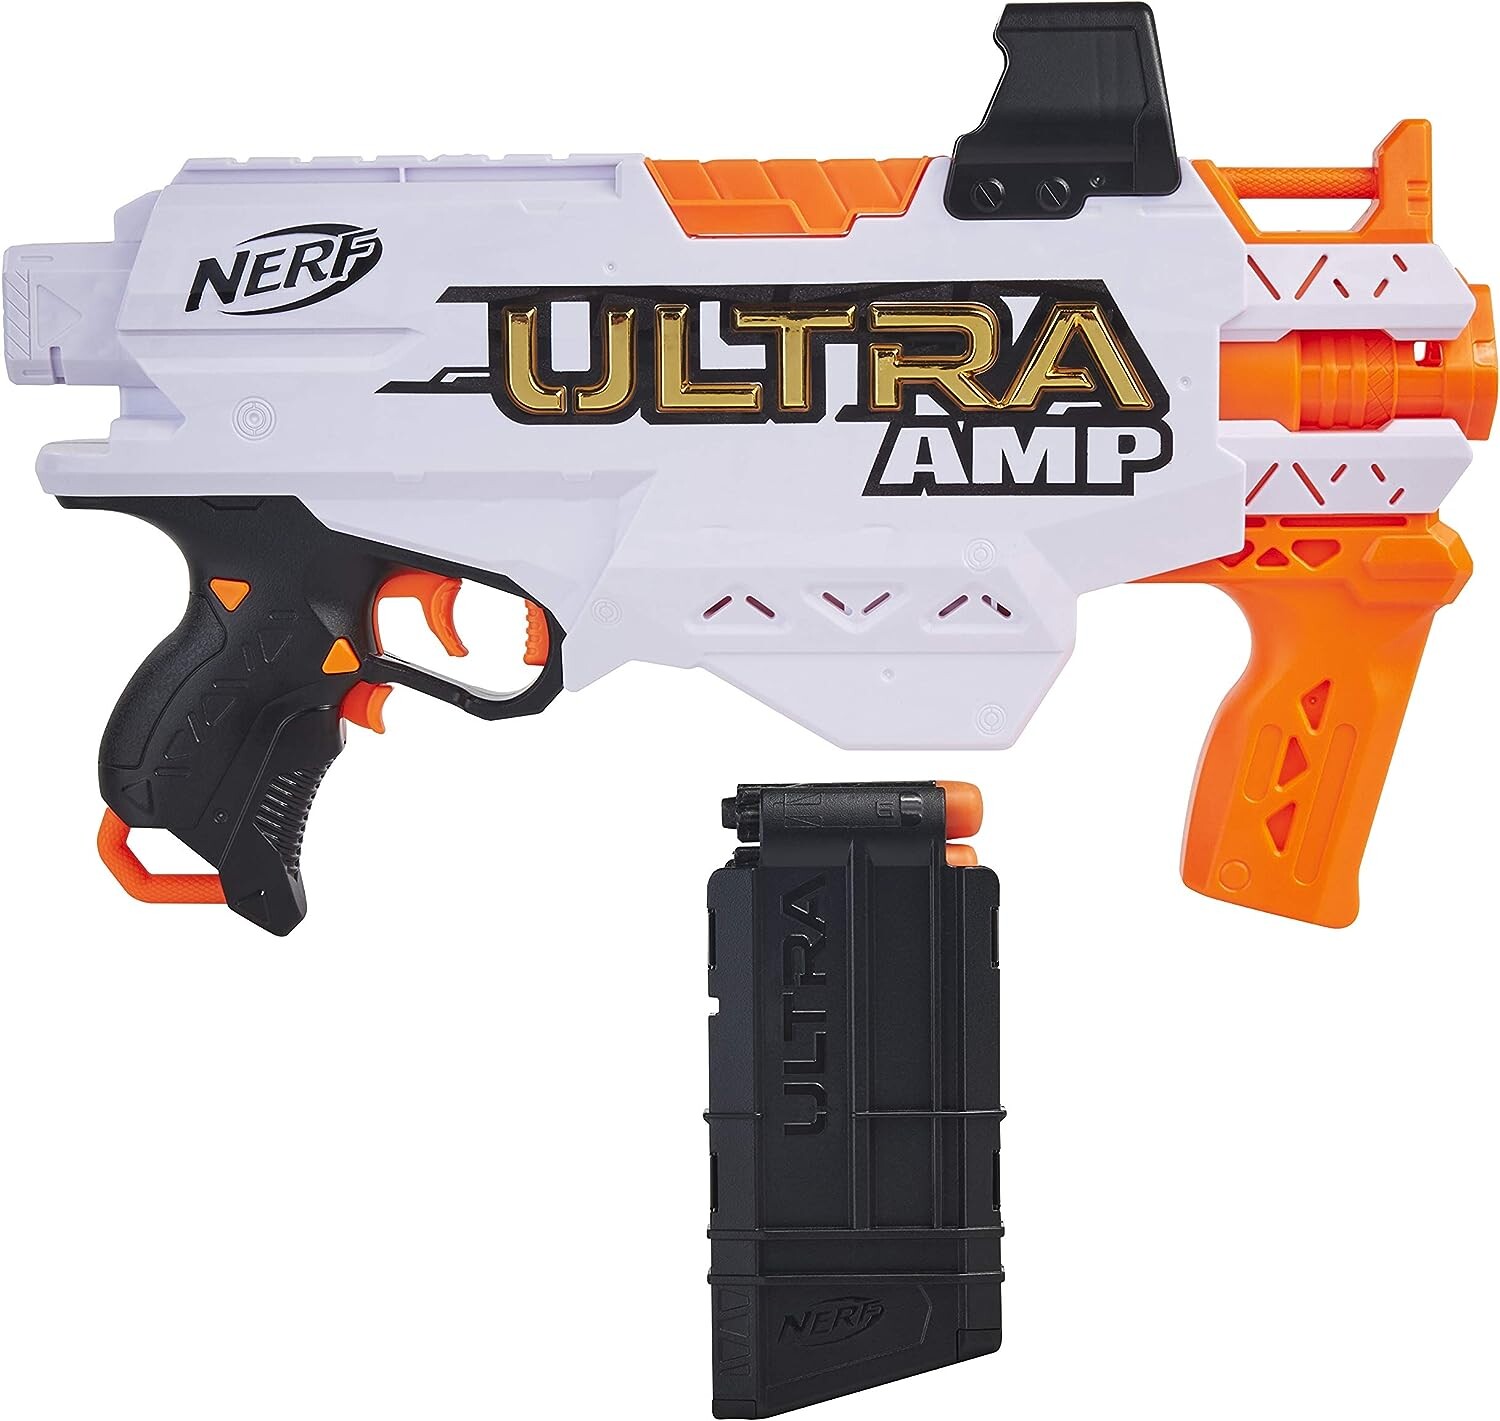 Pistolet à fléchettes NERF Ultra One - Ultra distance, précision